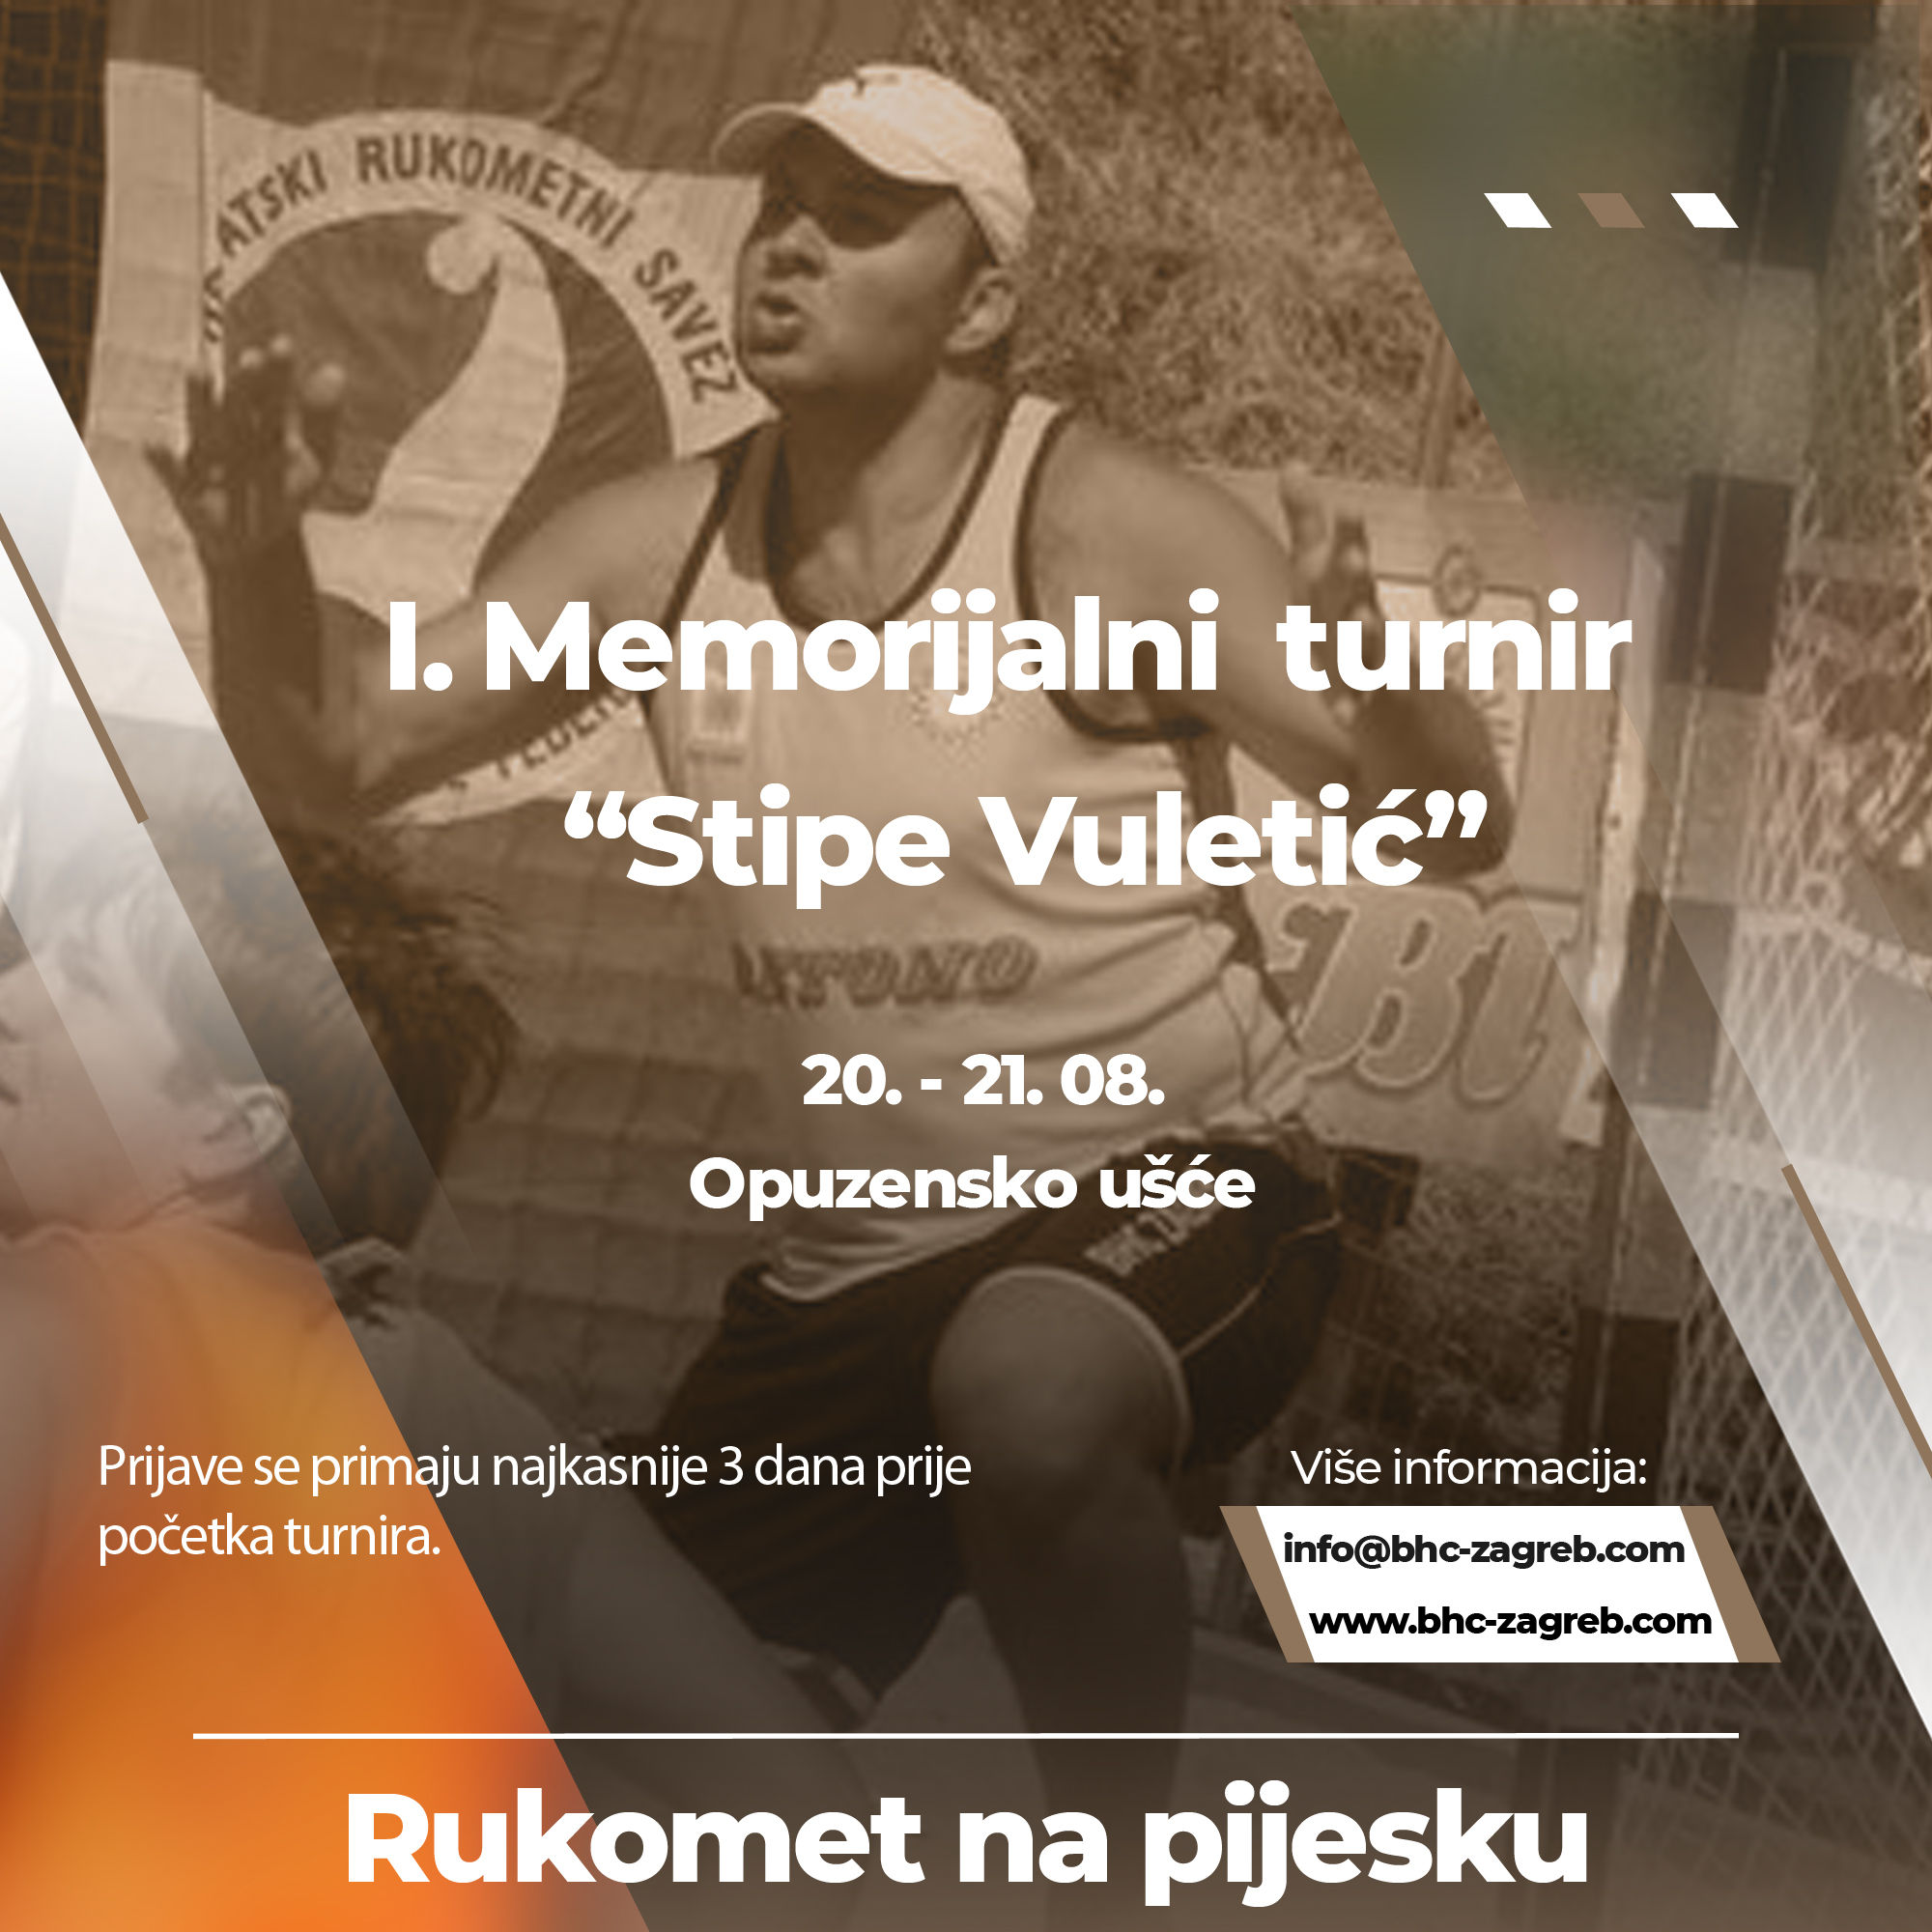 2022 Memorijalni turnir Stipe Vuletic no logo